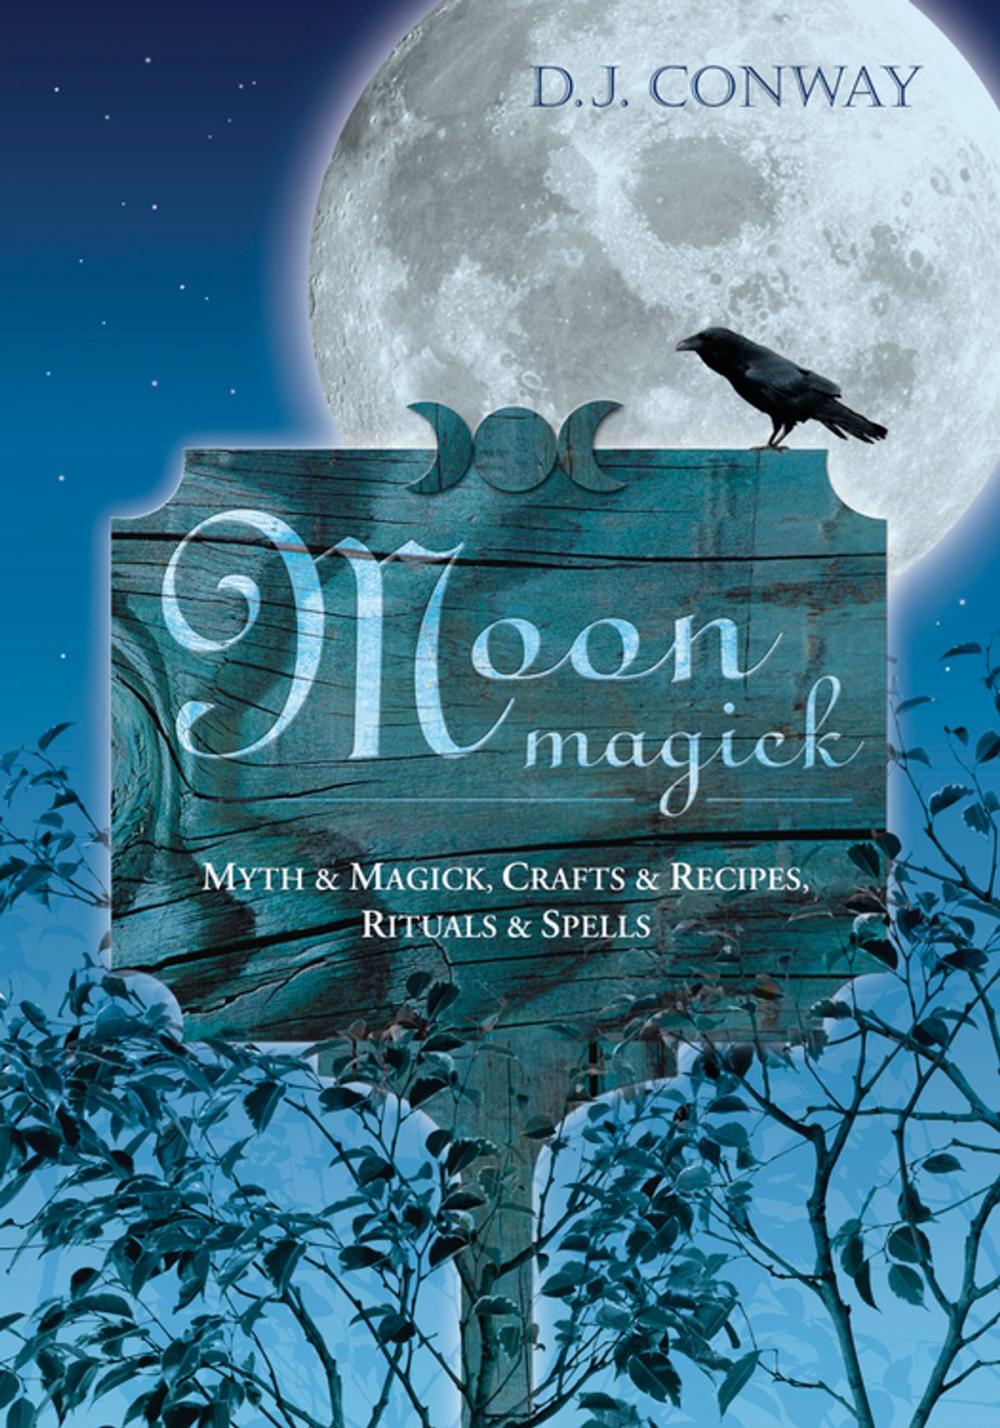 Big bigCover of Moon Magick